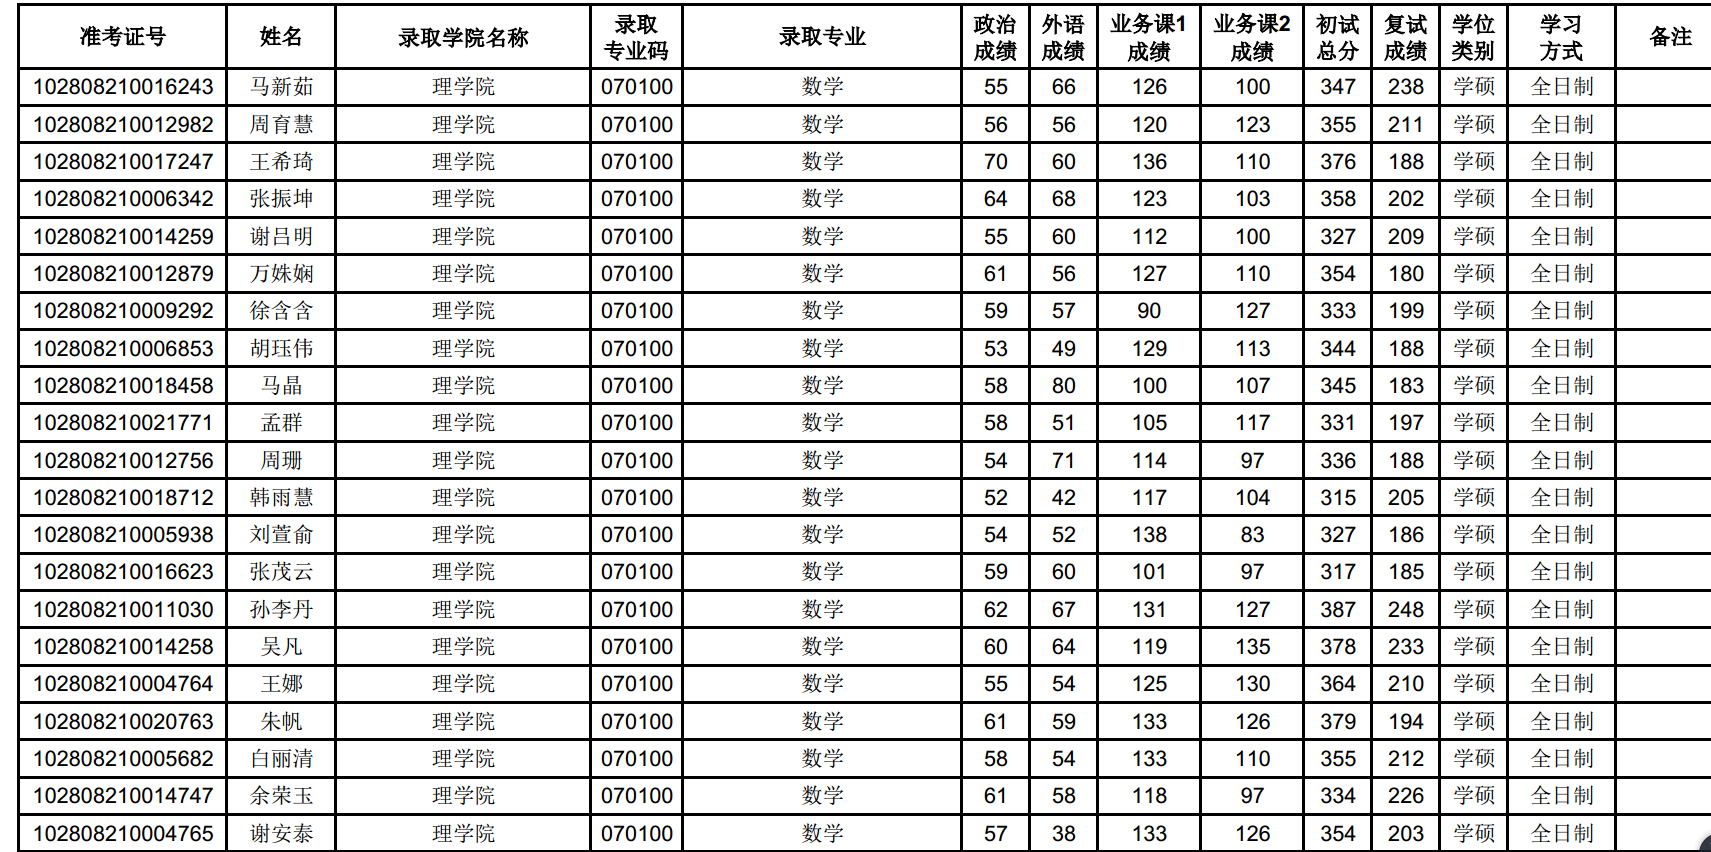 上海大学2018年拟录取硕士研究生名单公示